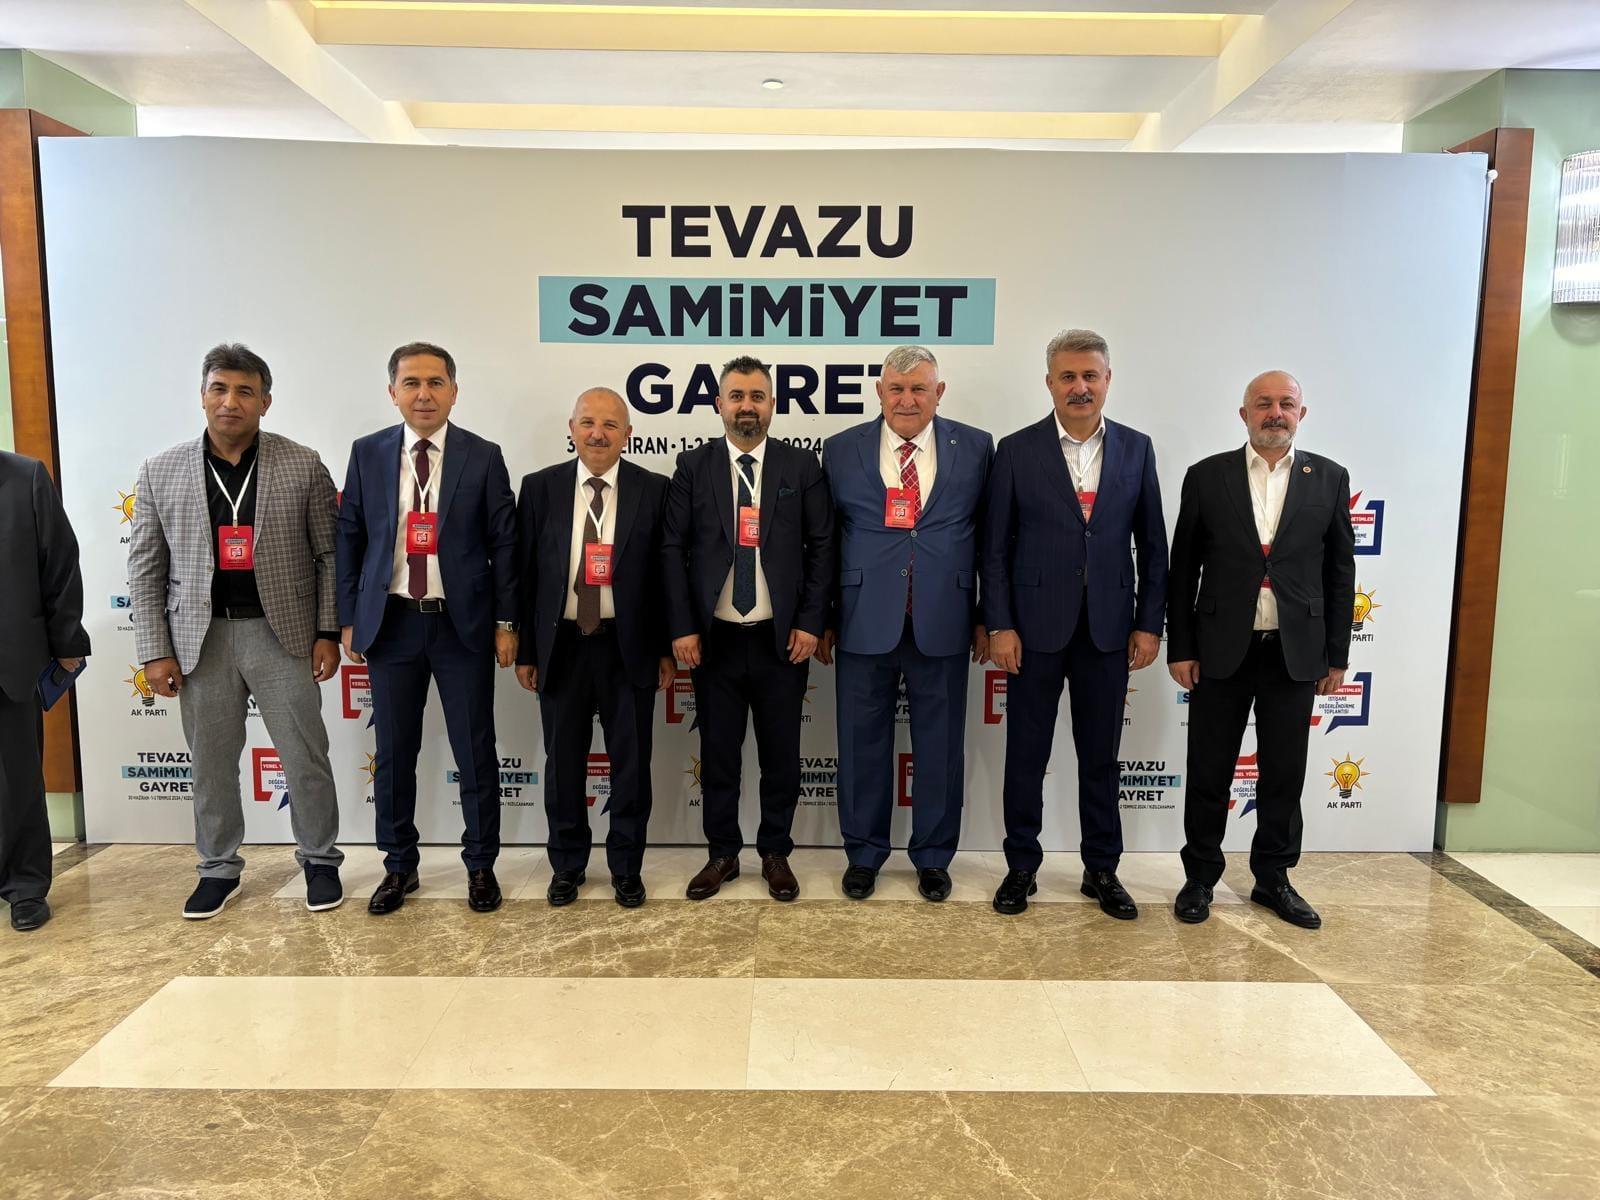 AK Partil Belediye Başkanları Kızılcahamam Kampında - Kırıkkale Haber, Son Dakika Kırıkkale Haberleri